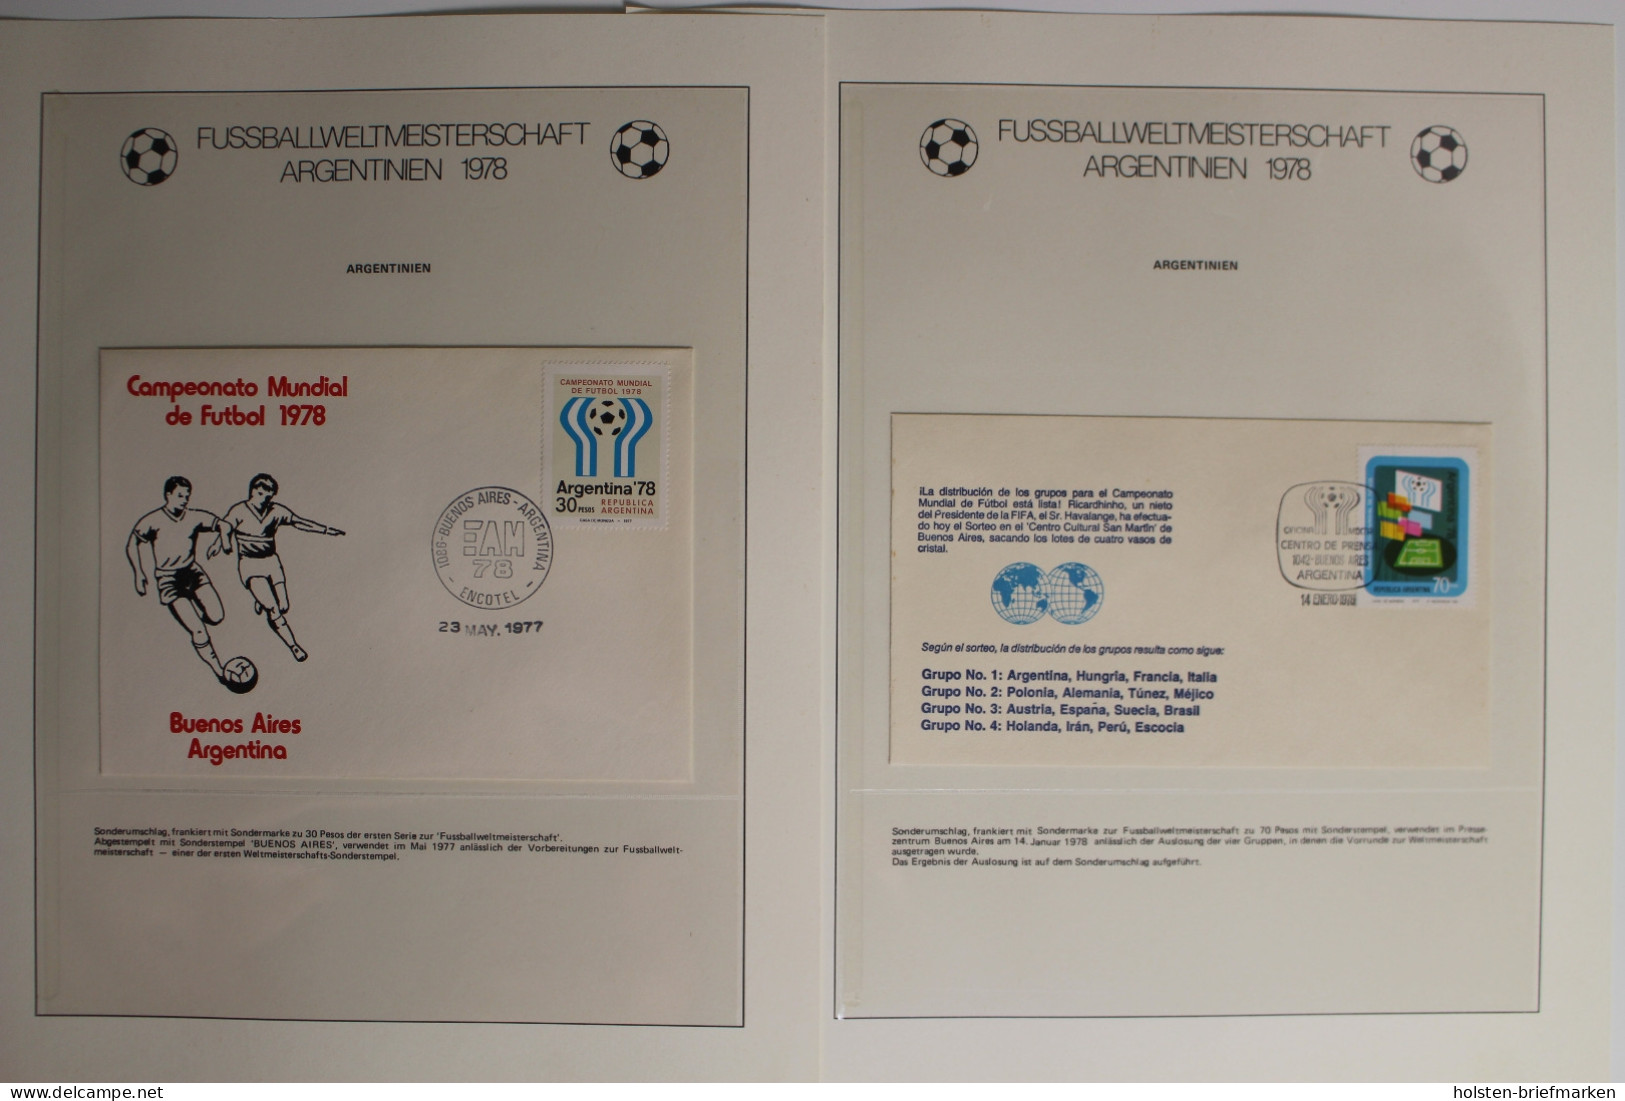 Fussballweltmeisterschaft Argentinien 1978, im Lindner Vordruck